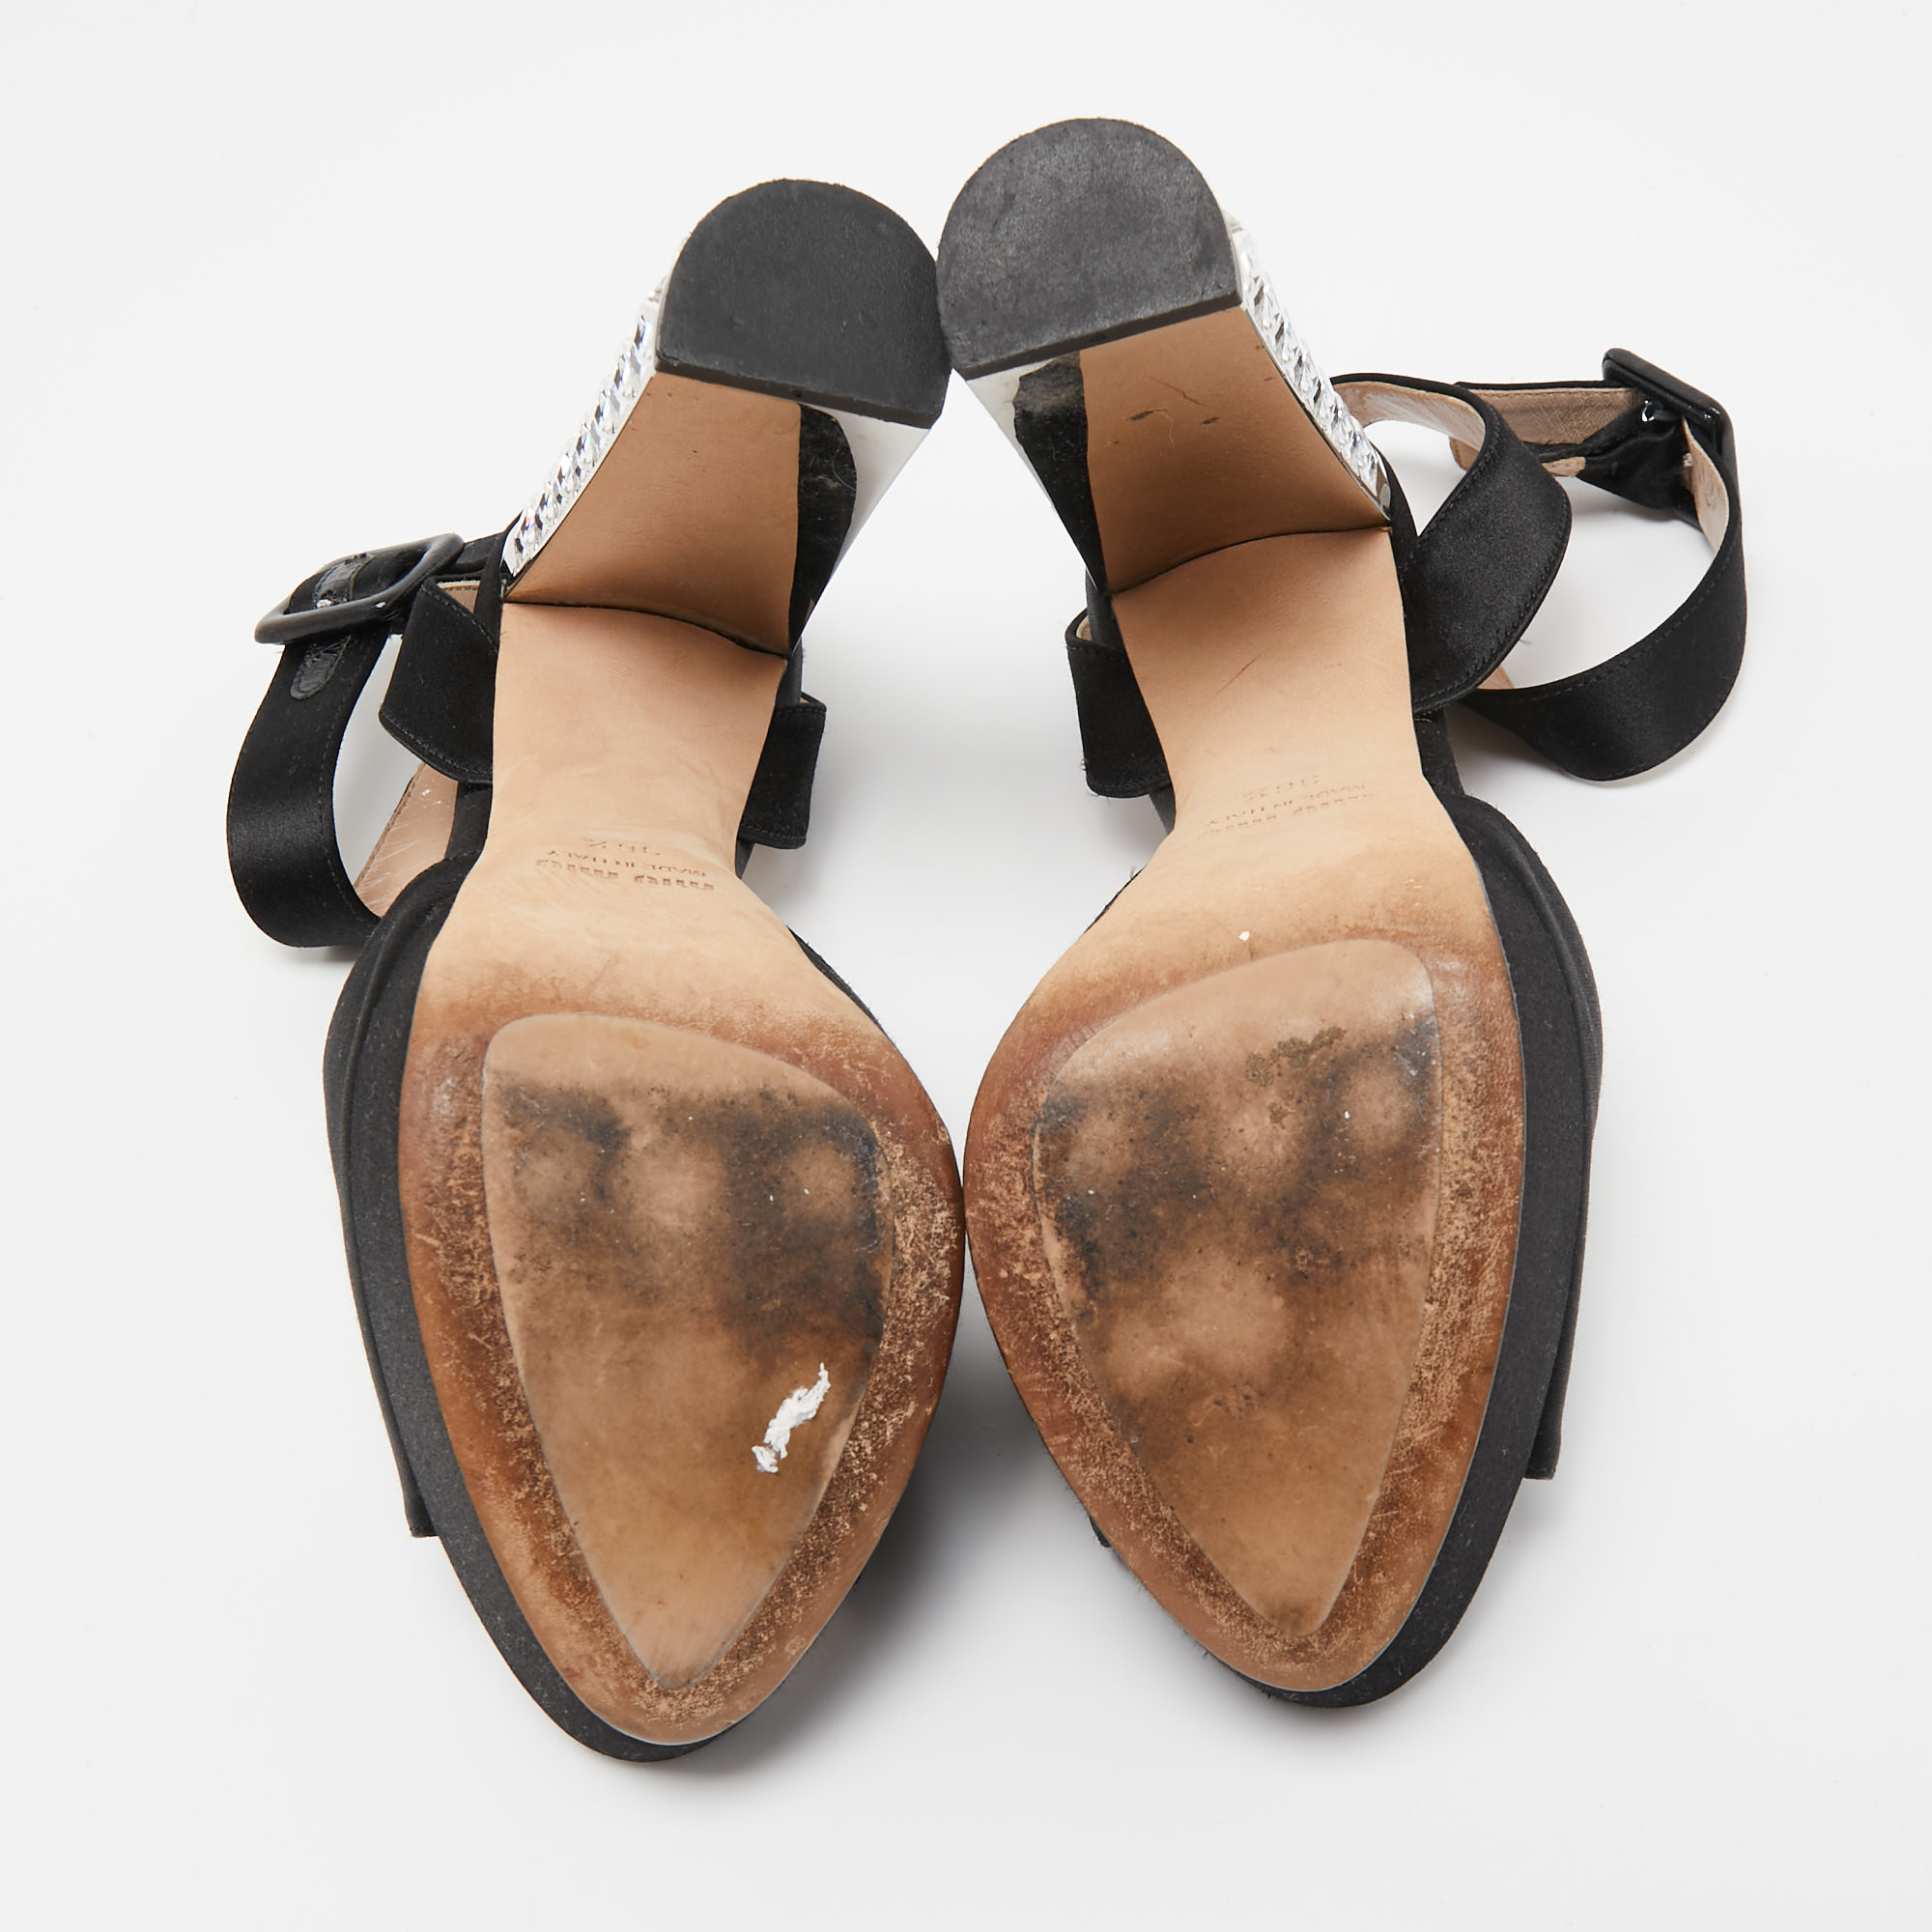 Miu Miu Black Satin Crystal Embellished Platform Ankle Strap Sandals Size 36.5